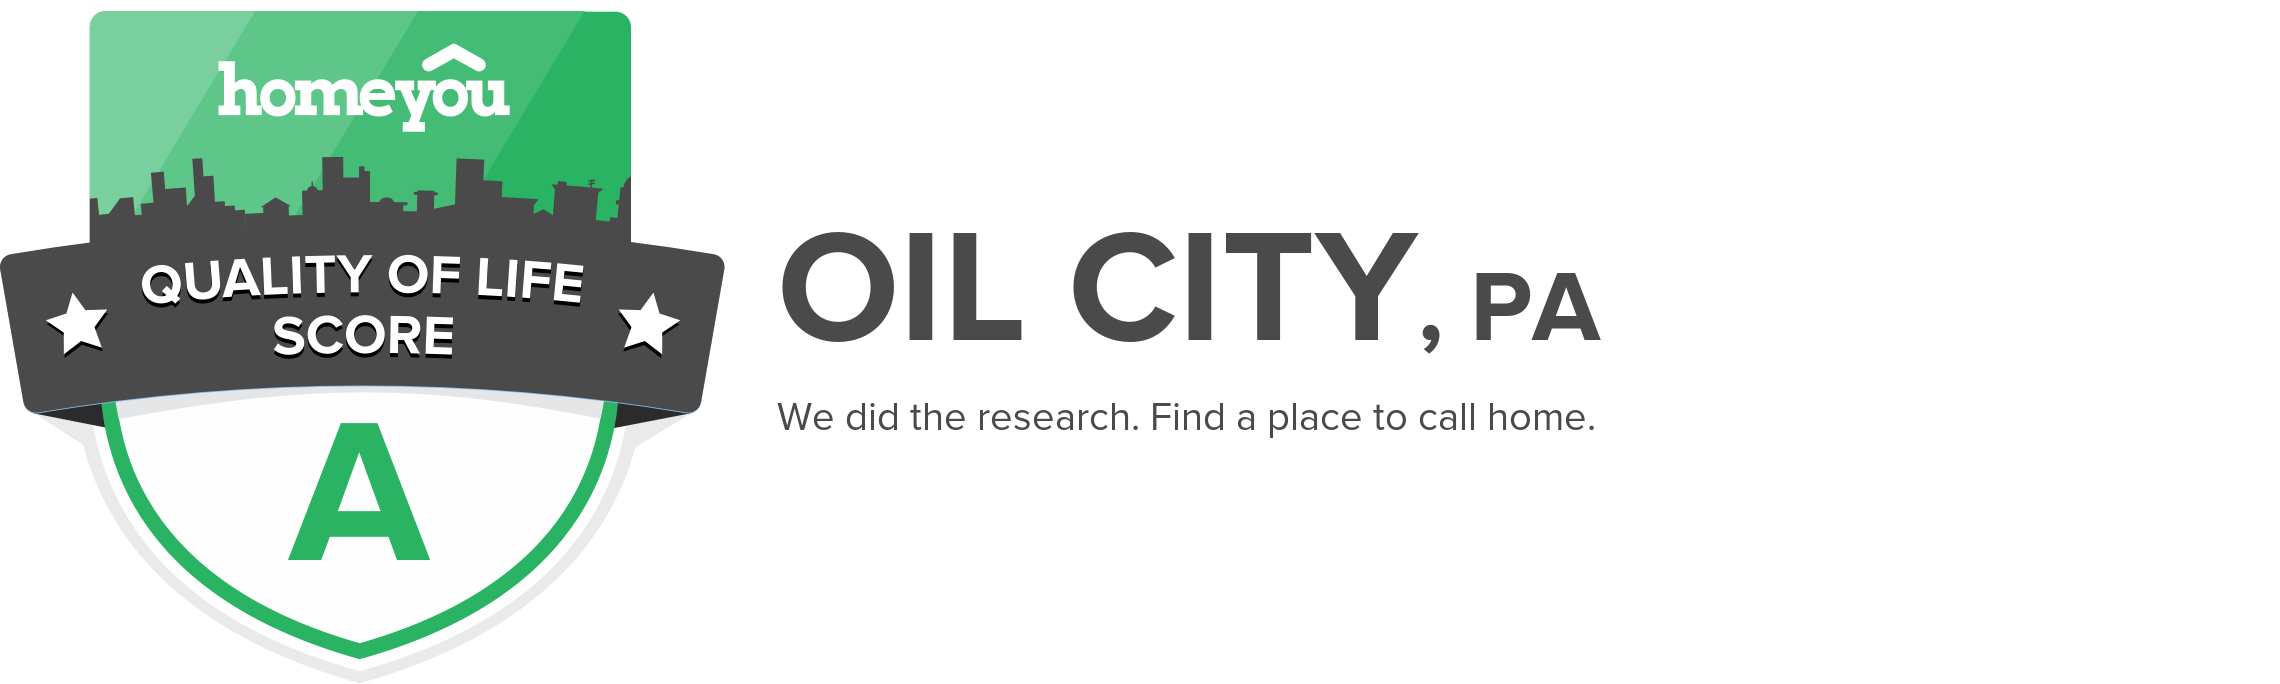 Oil City, PA